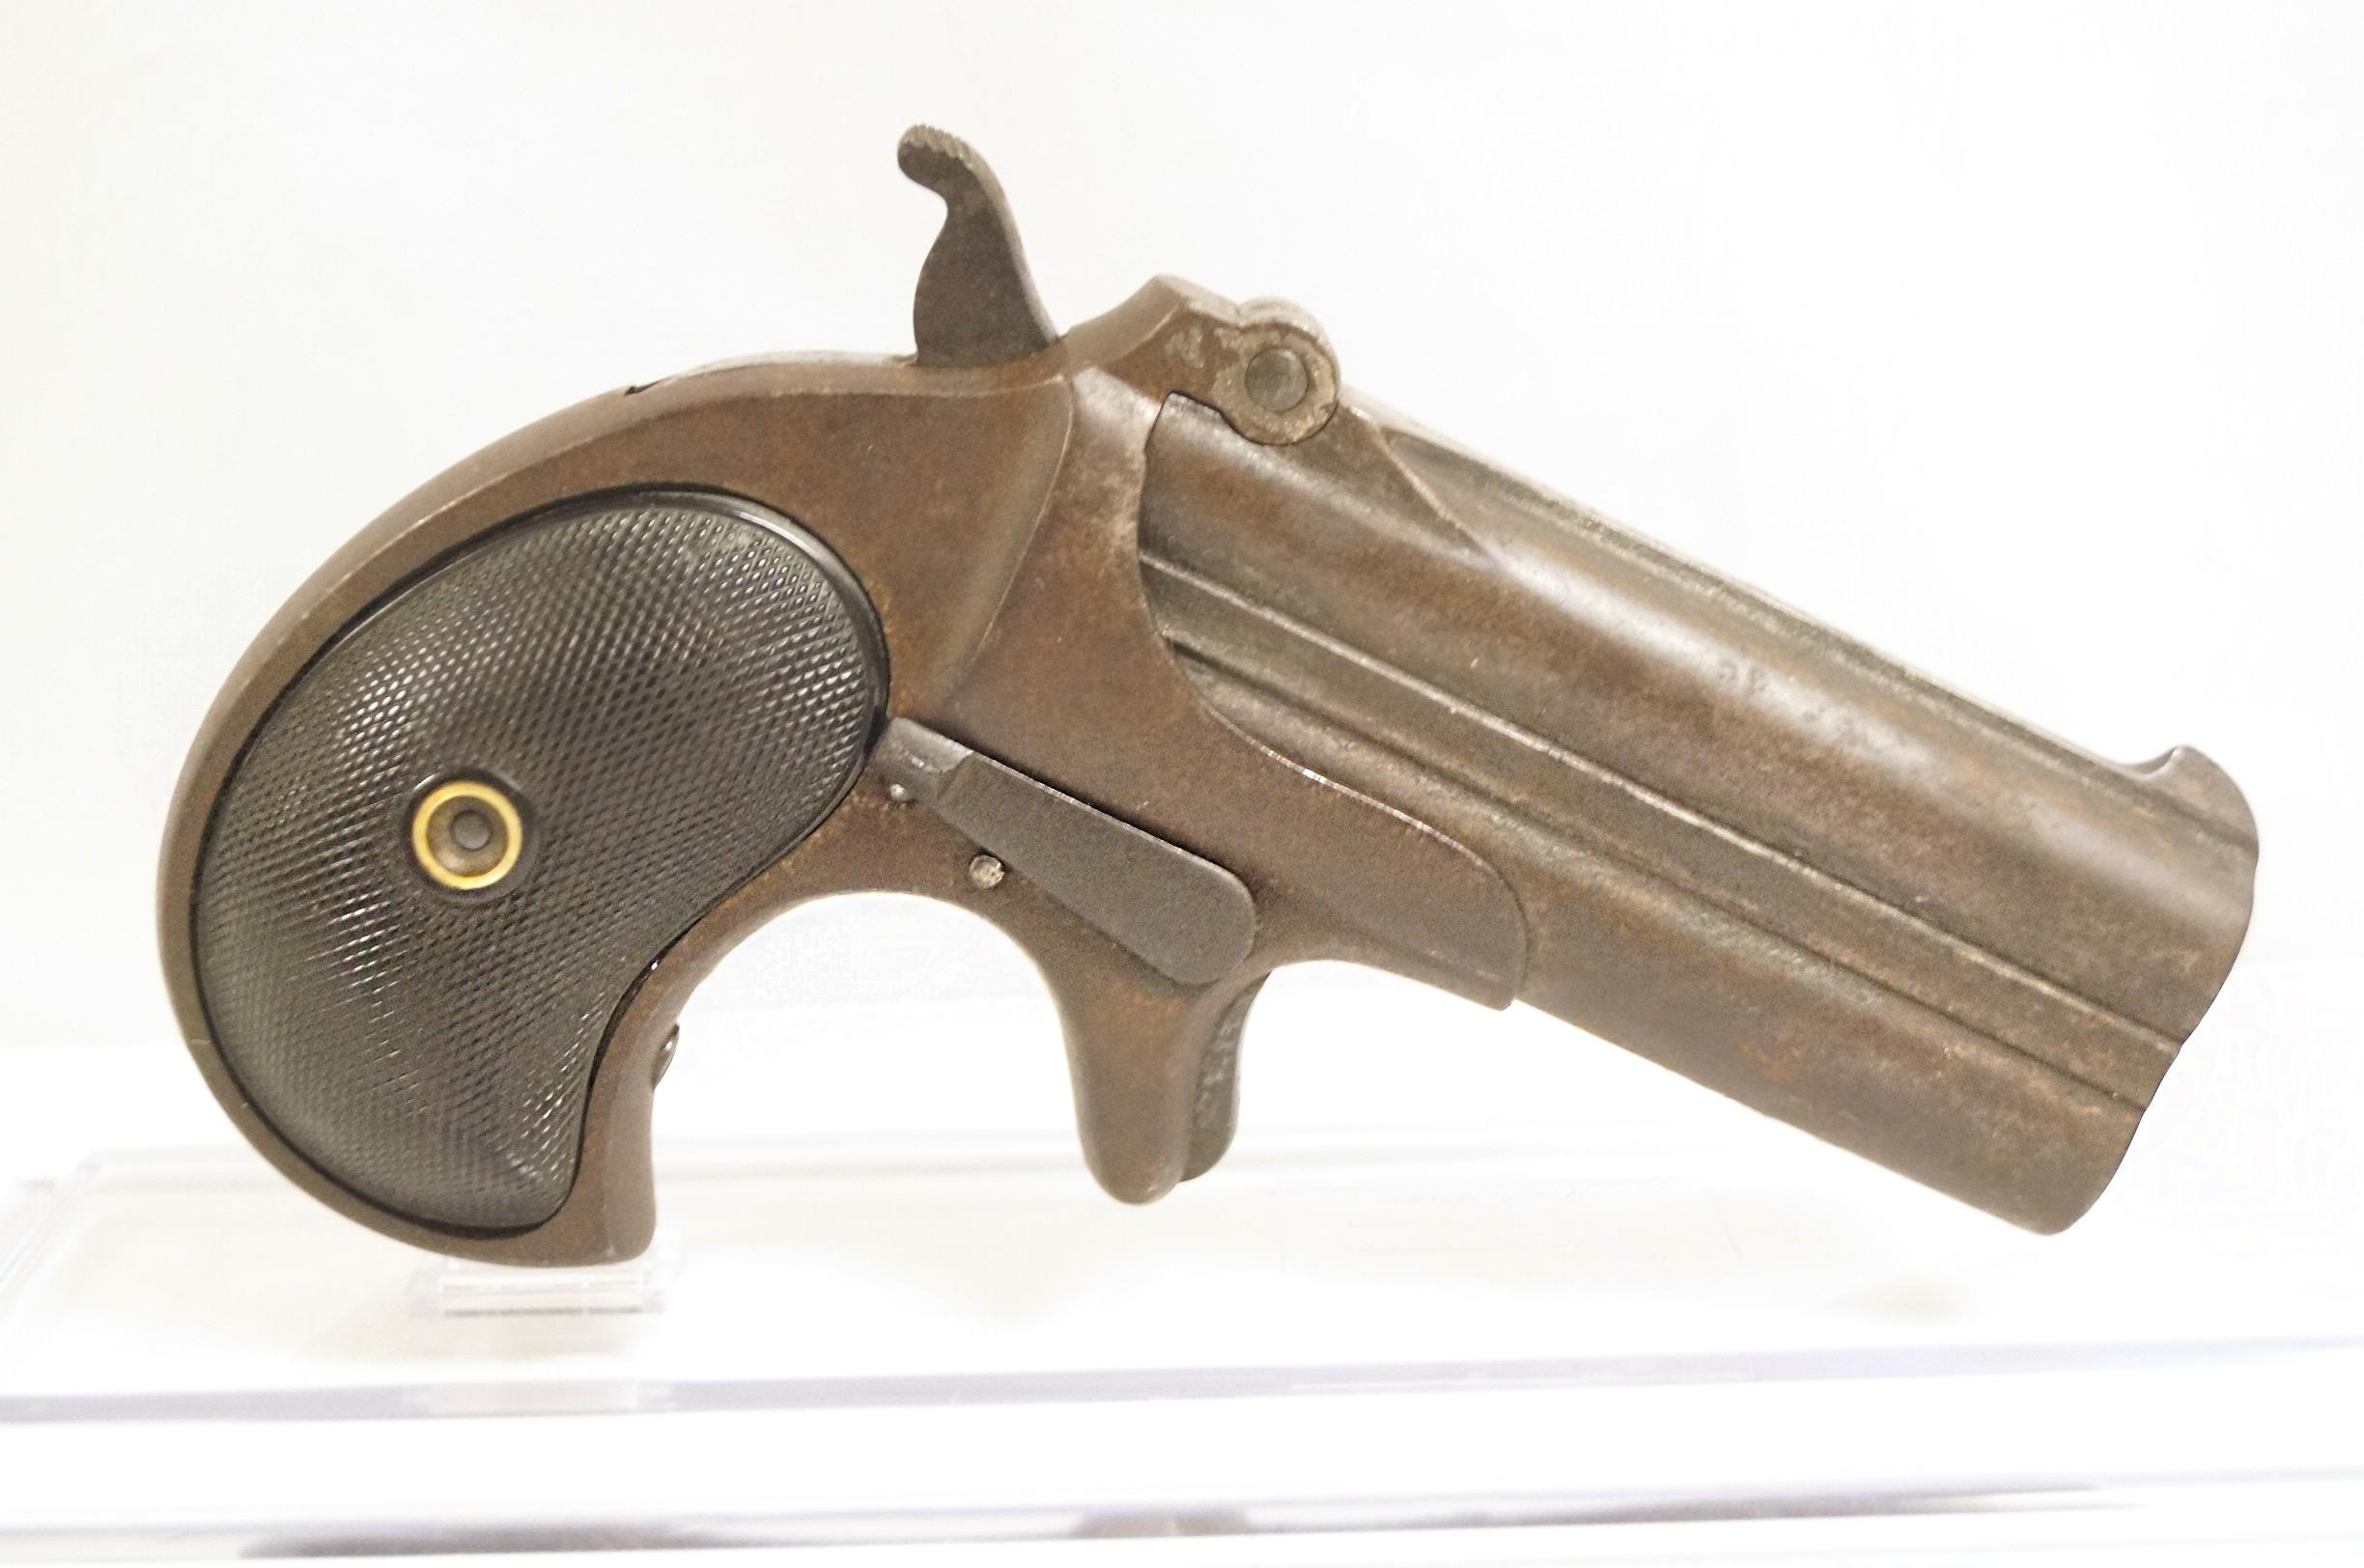 Remington Arms Co. Illion N.Y. Model 95 2 Shot Derringer Pistol